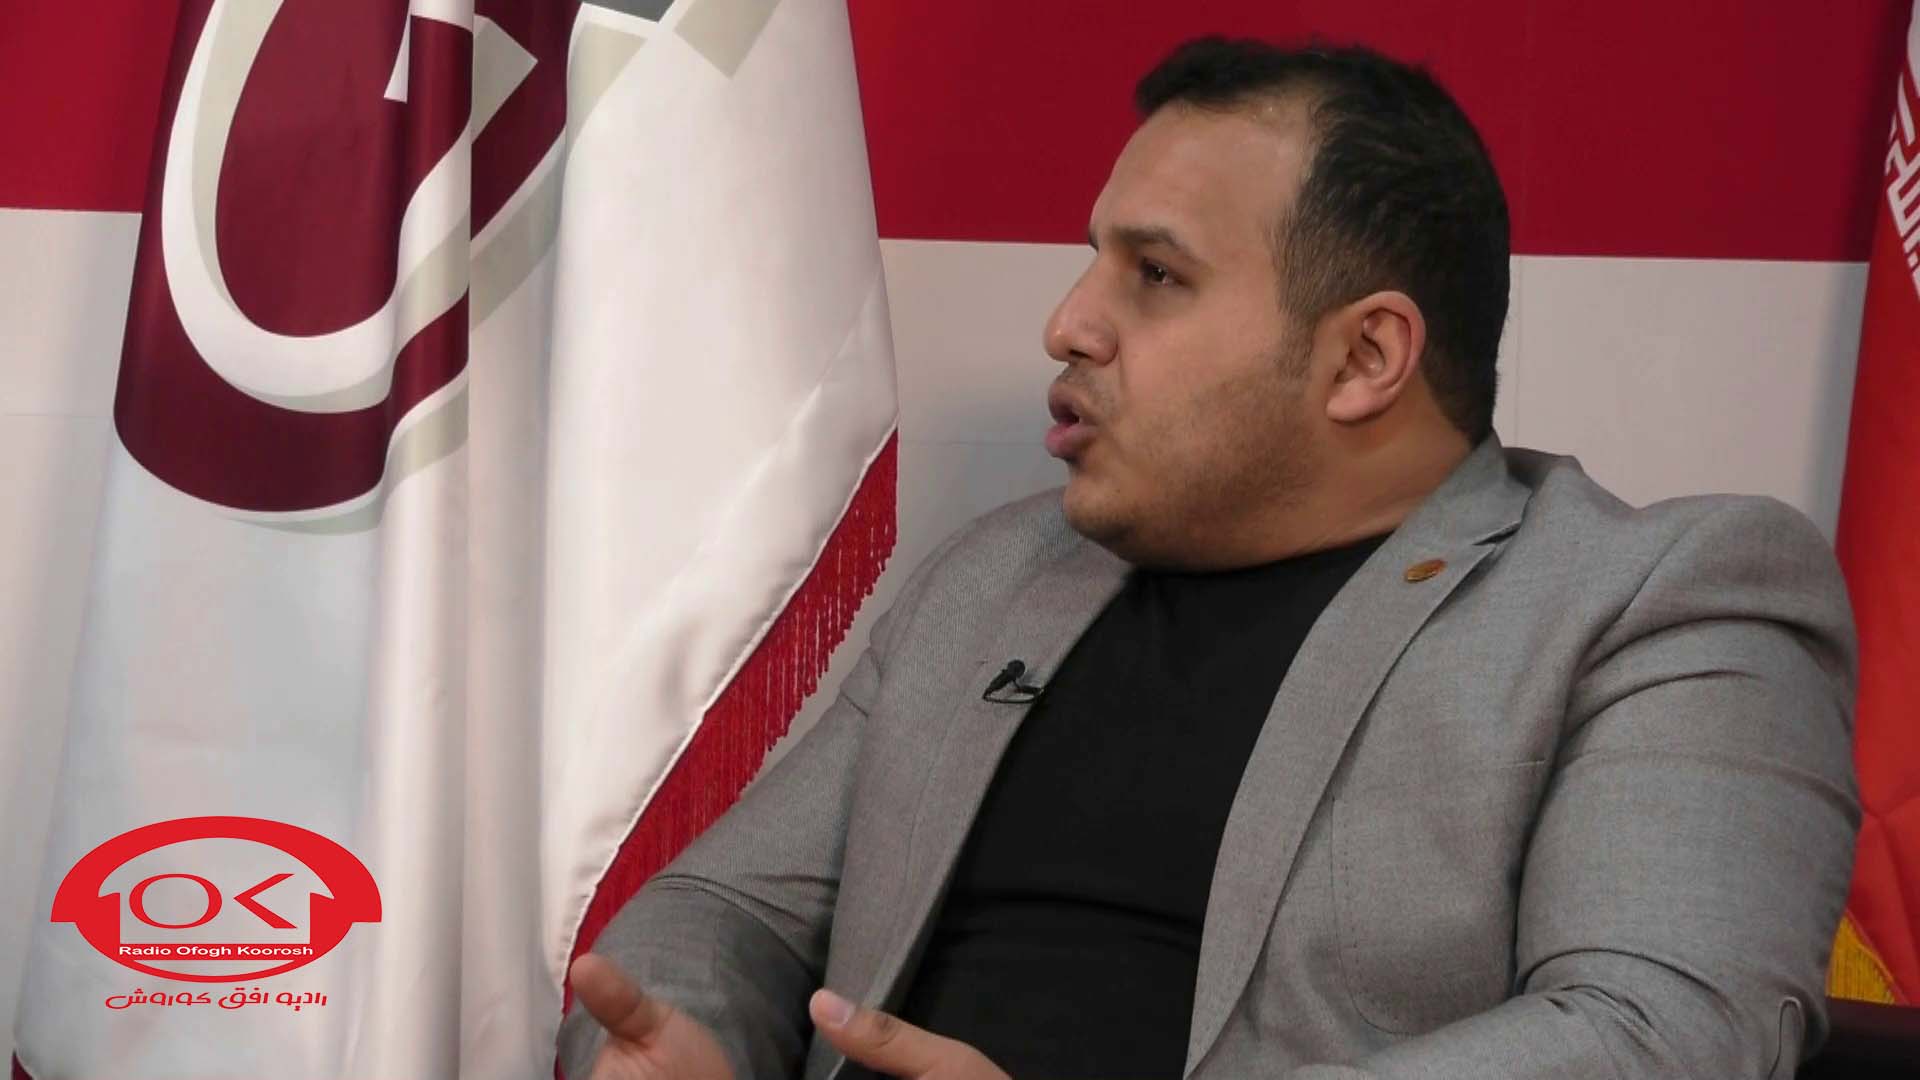  تصاویر مصاحبه رادیو افق کوروش با دکتر حسن نژاد